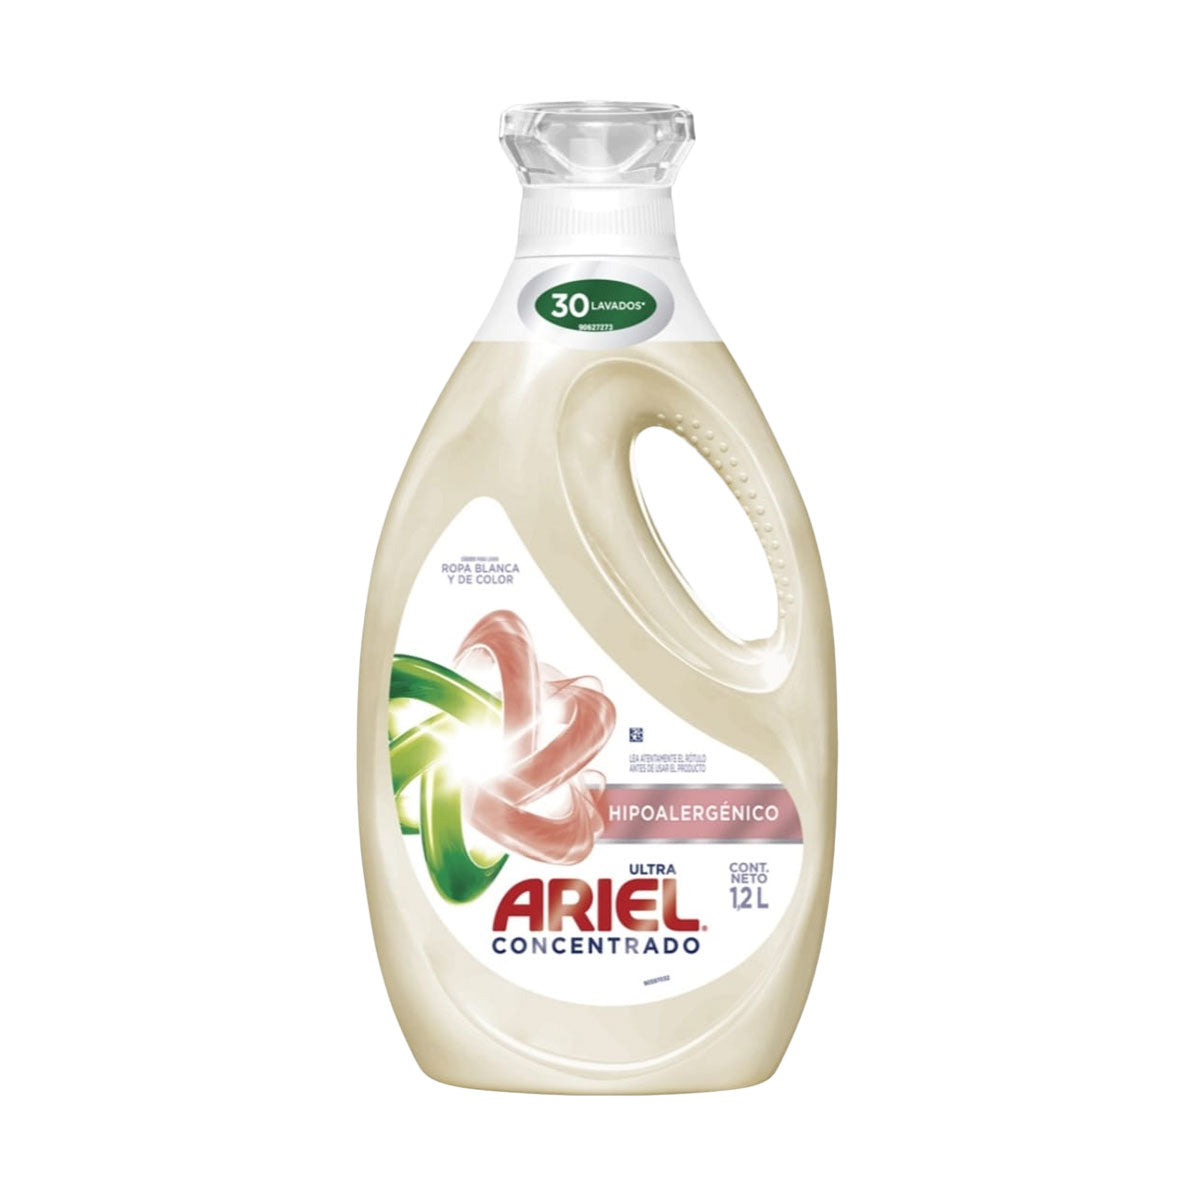  Ariel, con Ultra Oxi, detergente en polvo para ropa